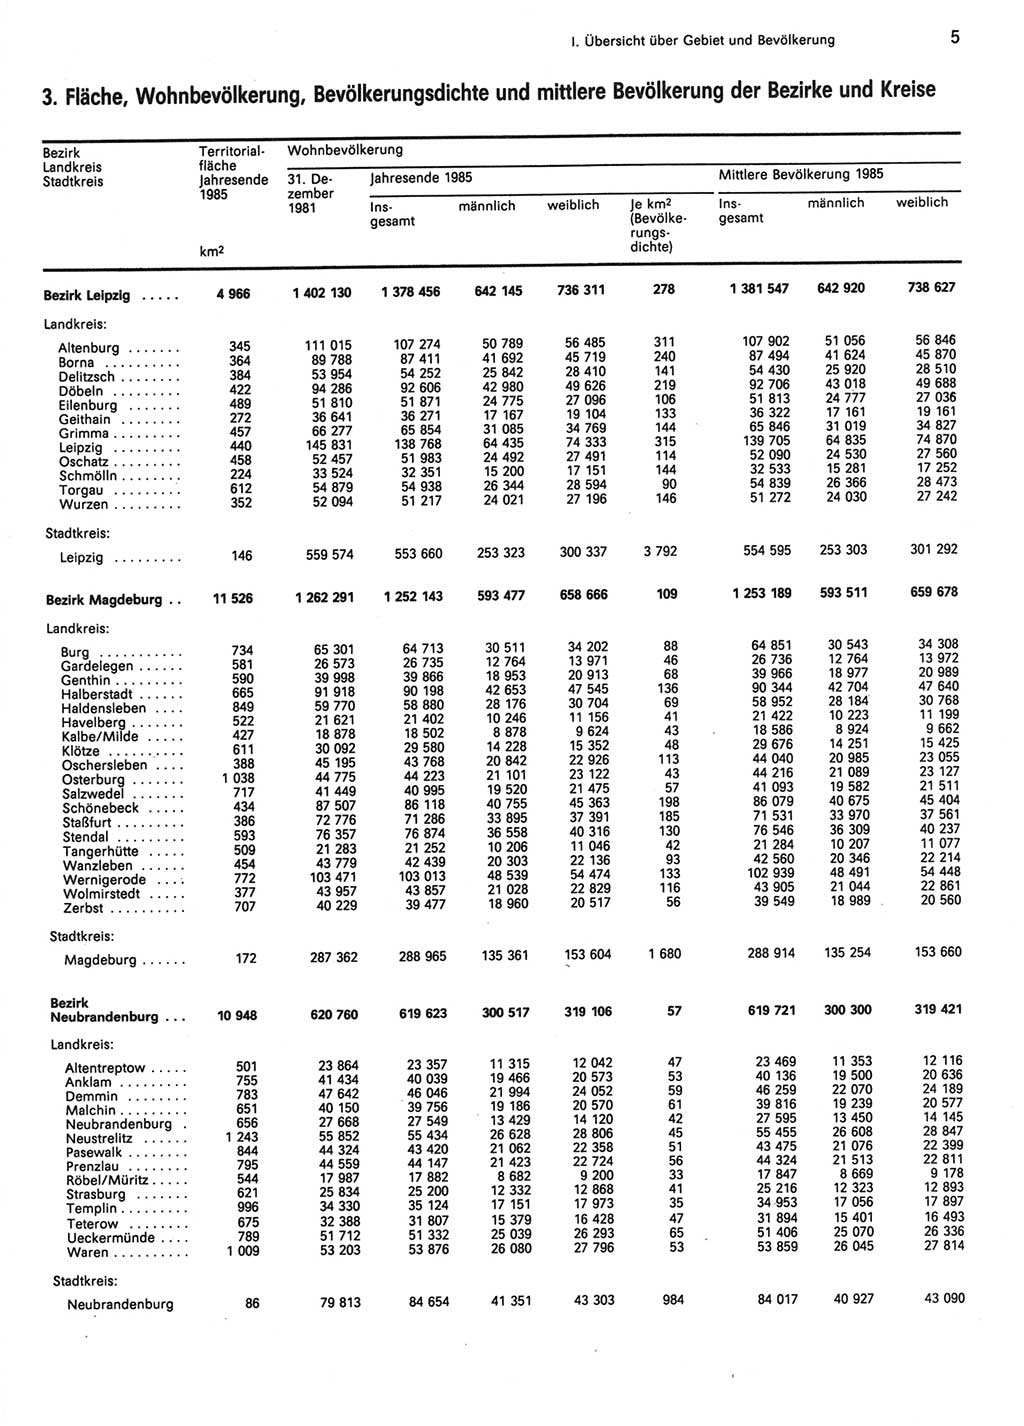 Statistisches Jahrbuch der Deutschen Demokratischen Republik (DDR) 1986, Seite 5 (Stat. Jb. DDR 1986, S. 5)